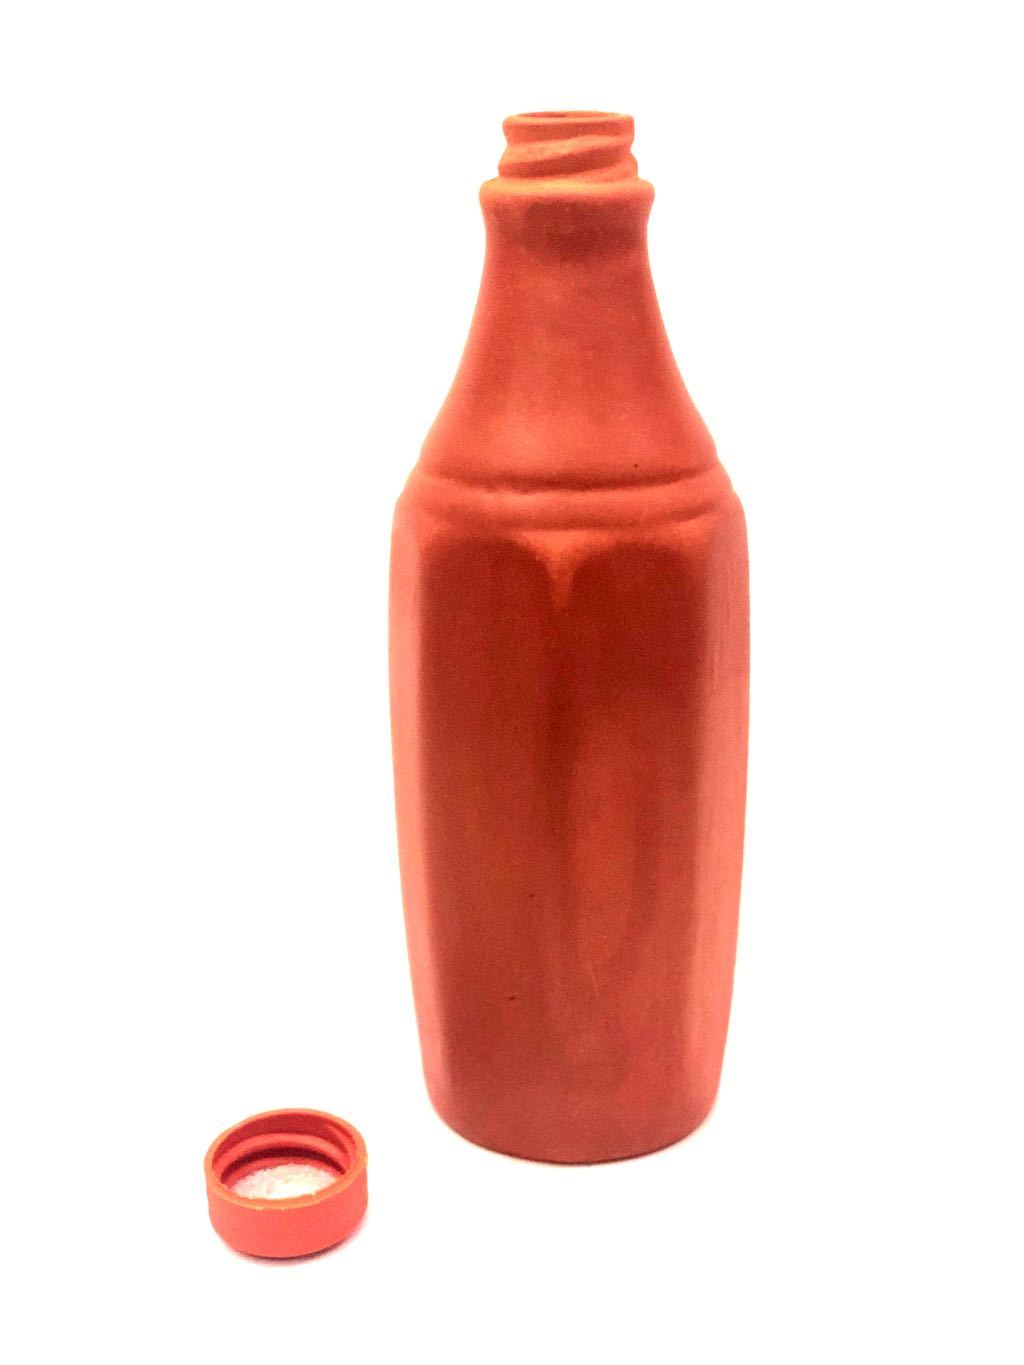 Earthenware Clay Water Bottle Bisleri Style Wholeseller Tamrapatra - Tamrapatra